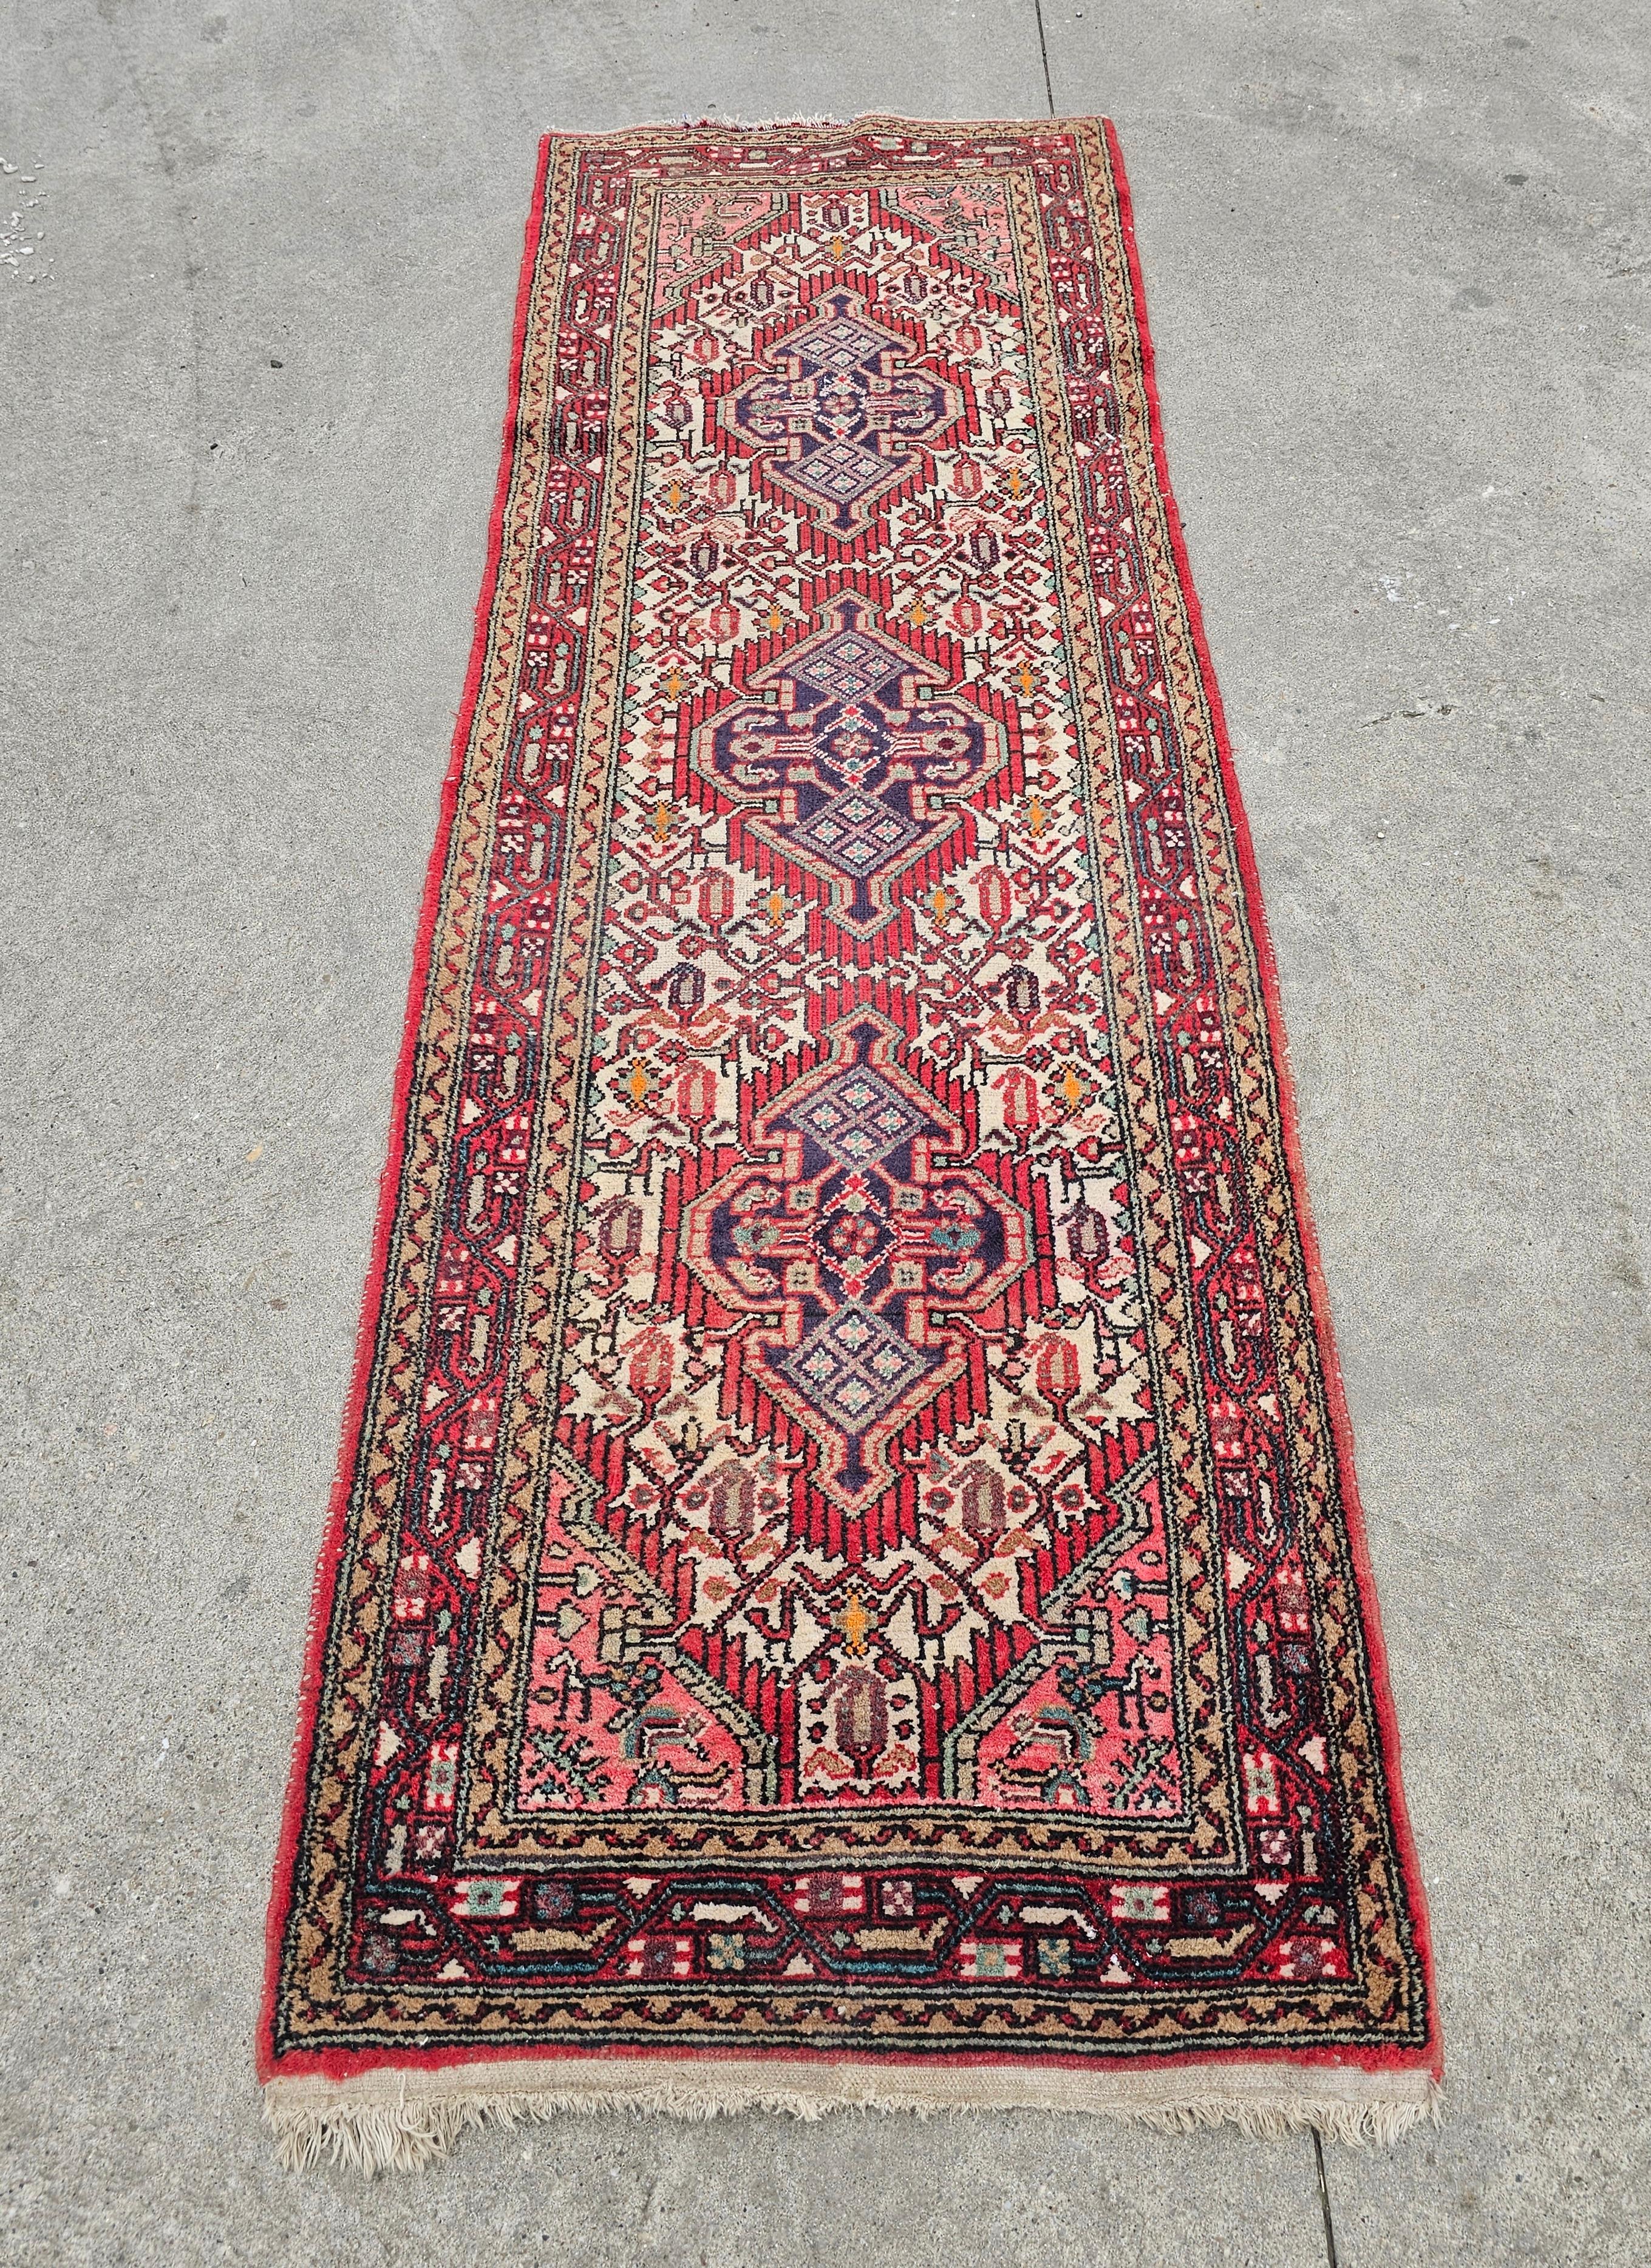 In dieser Auflistung finden Sie eine schöne Vintage persischen Hamadan Läufer Teppich, mit herrlichen Stammes-Muster. Der Läufer ist handgeknüpft und besteht aus 100% Wolle.

Guter Vintage-Zustand mit einigen Zeit- und Gebrauchsspuren, wie auf den